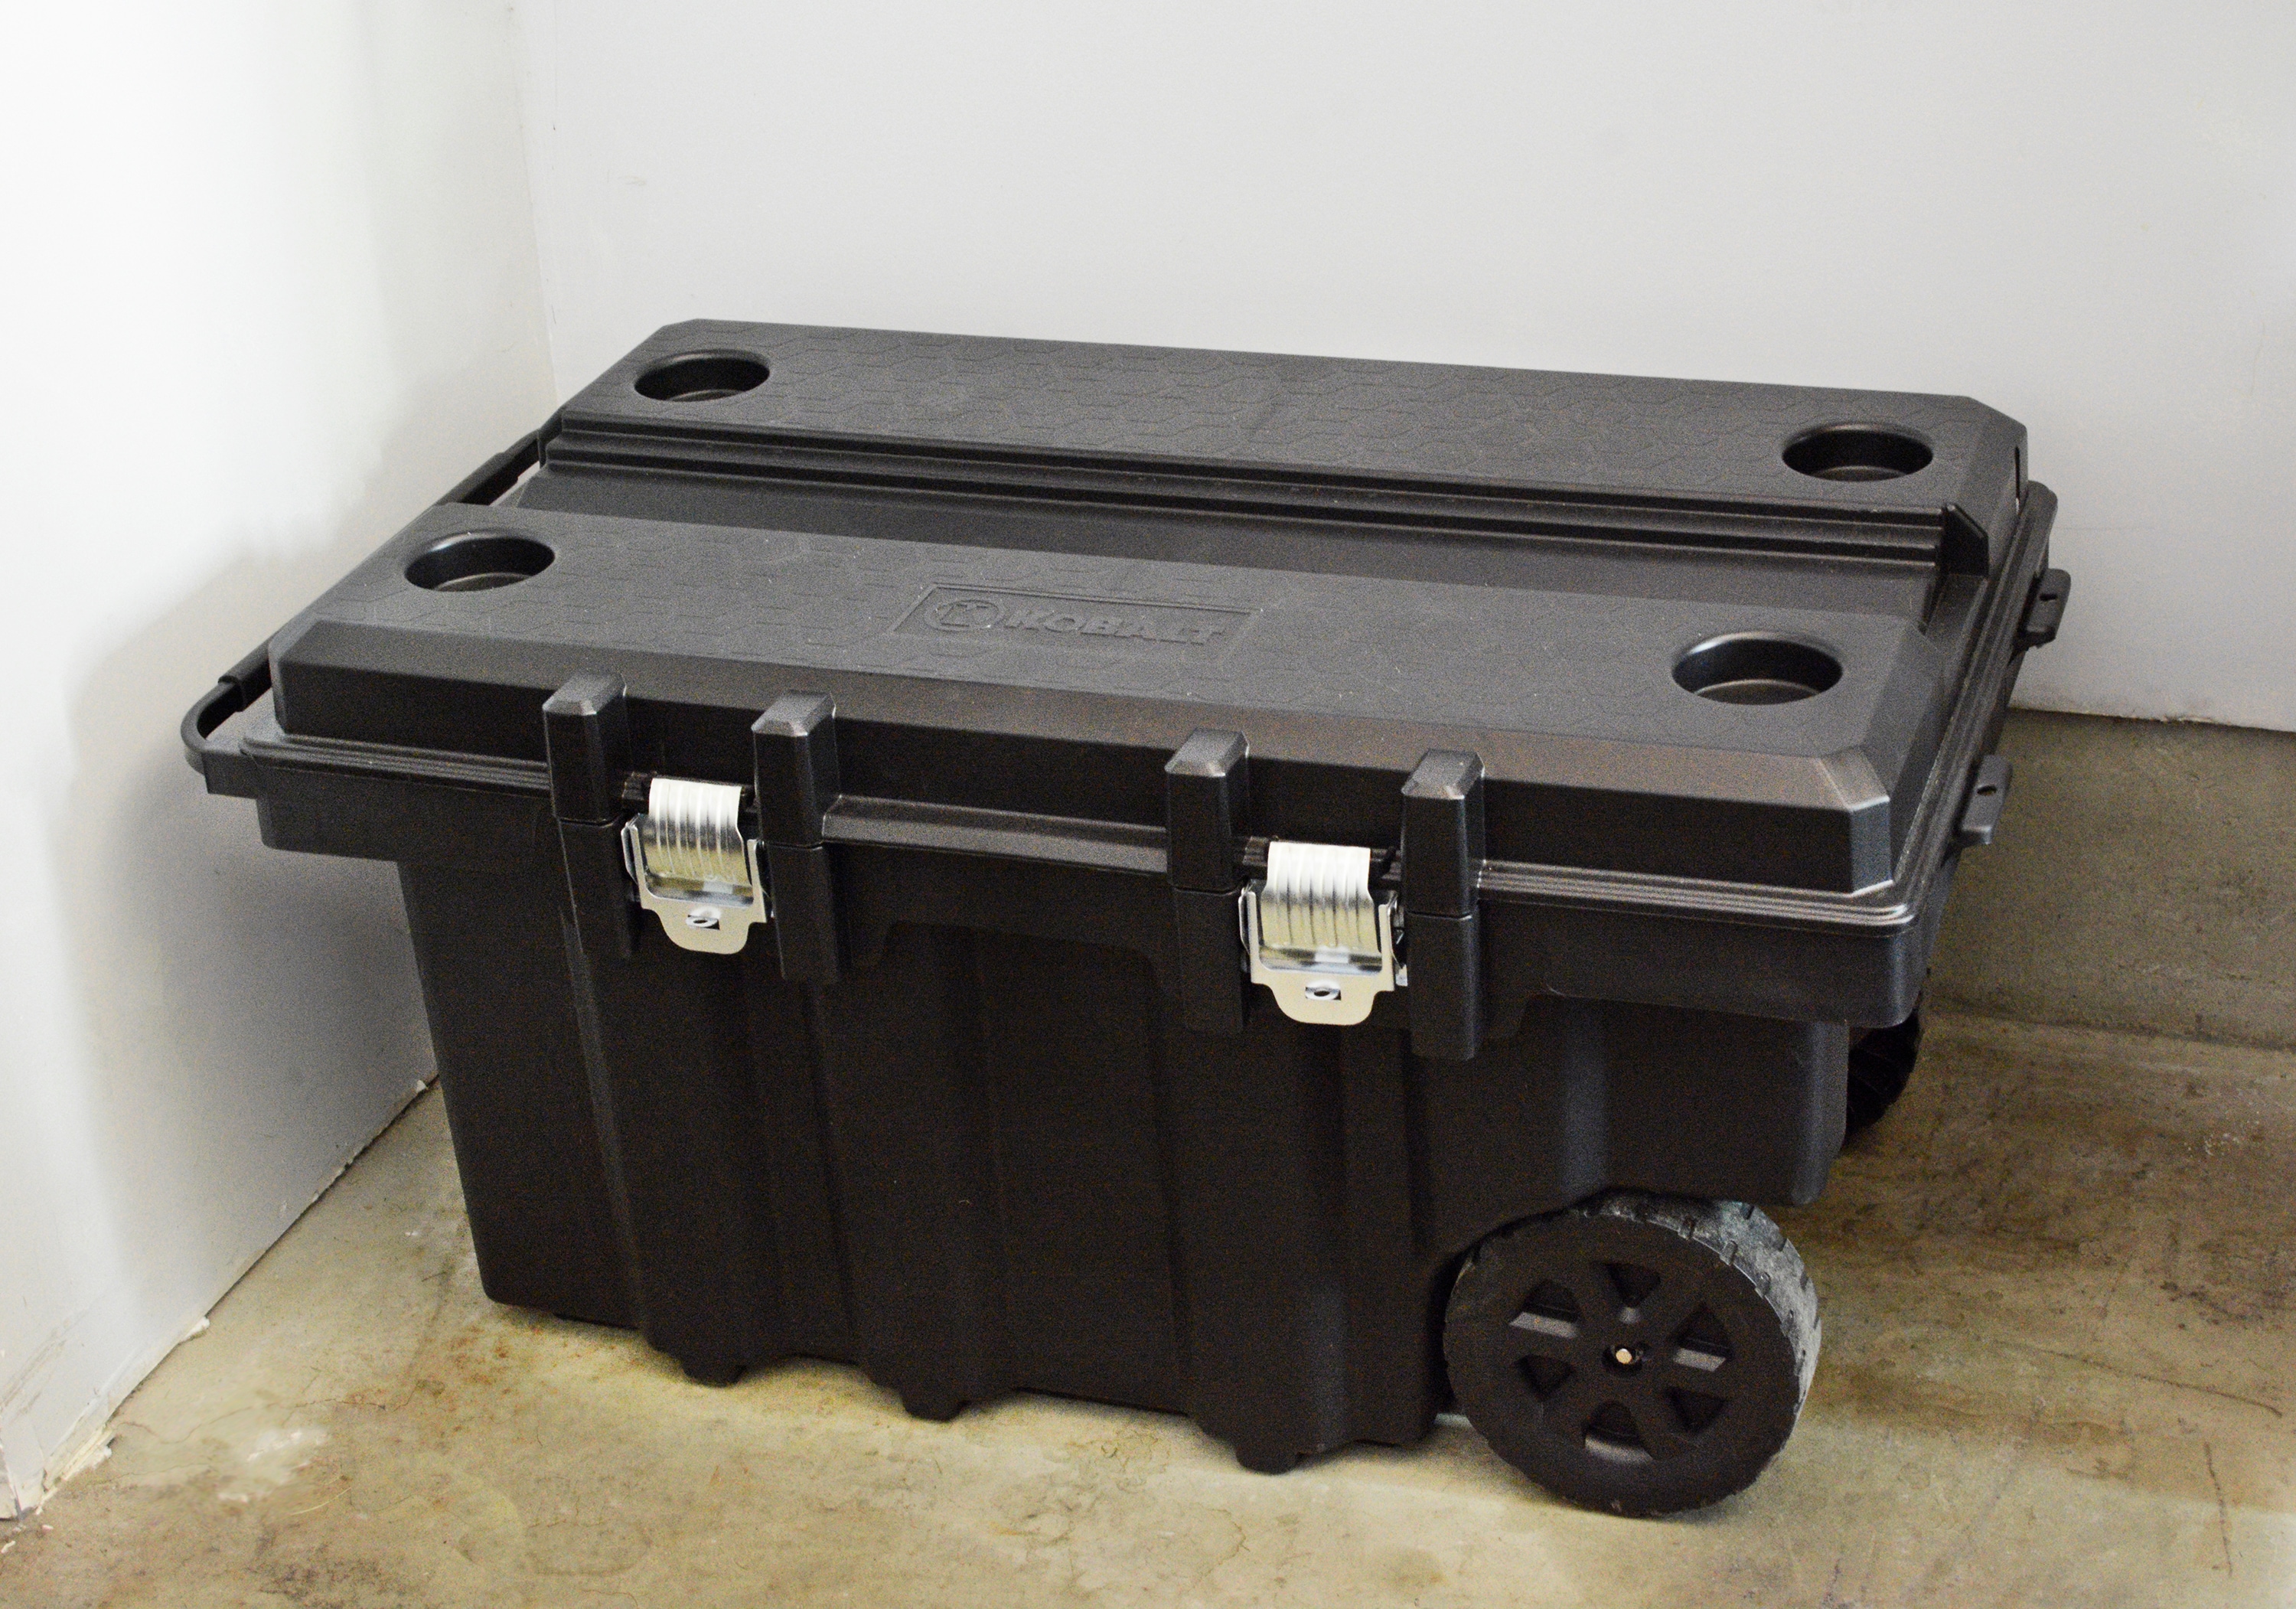 Kobalt 45-in Black Plastic Wheels Lockable Tool Box in the